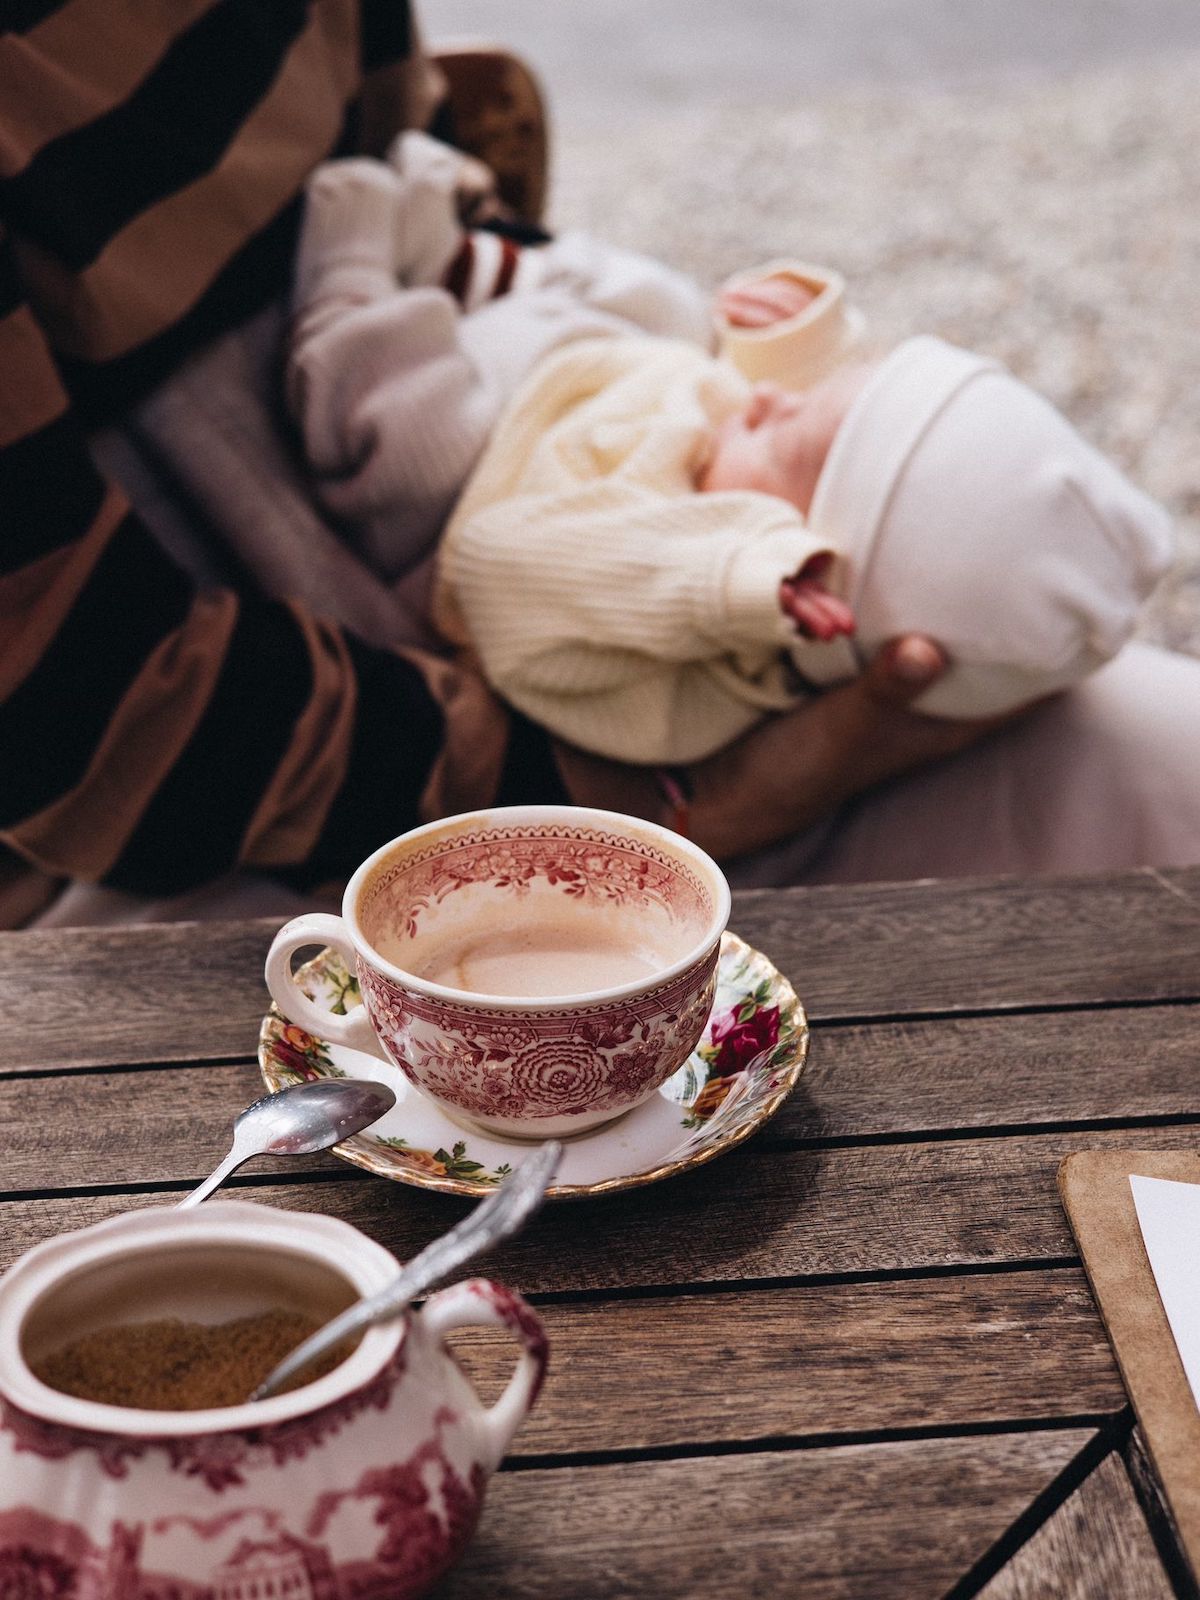 Im Vordergrund Kaffeetasse und Zuckerdose, im Hintergrund sitzt verschwommen eine Person, die ein Baby im Schoß hält.